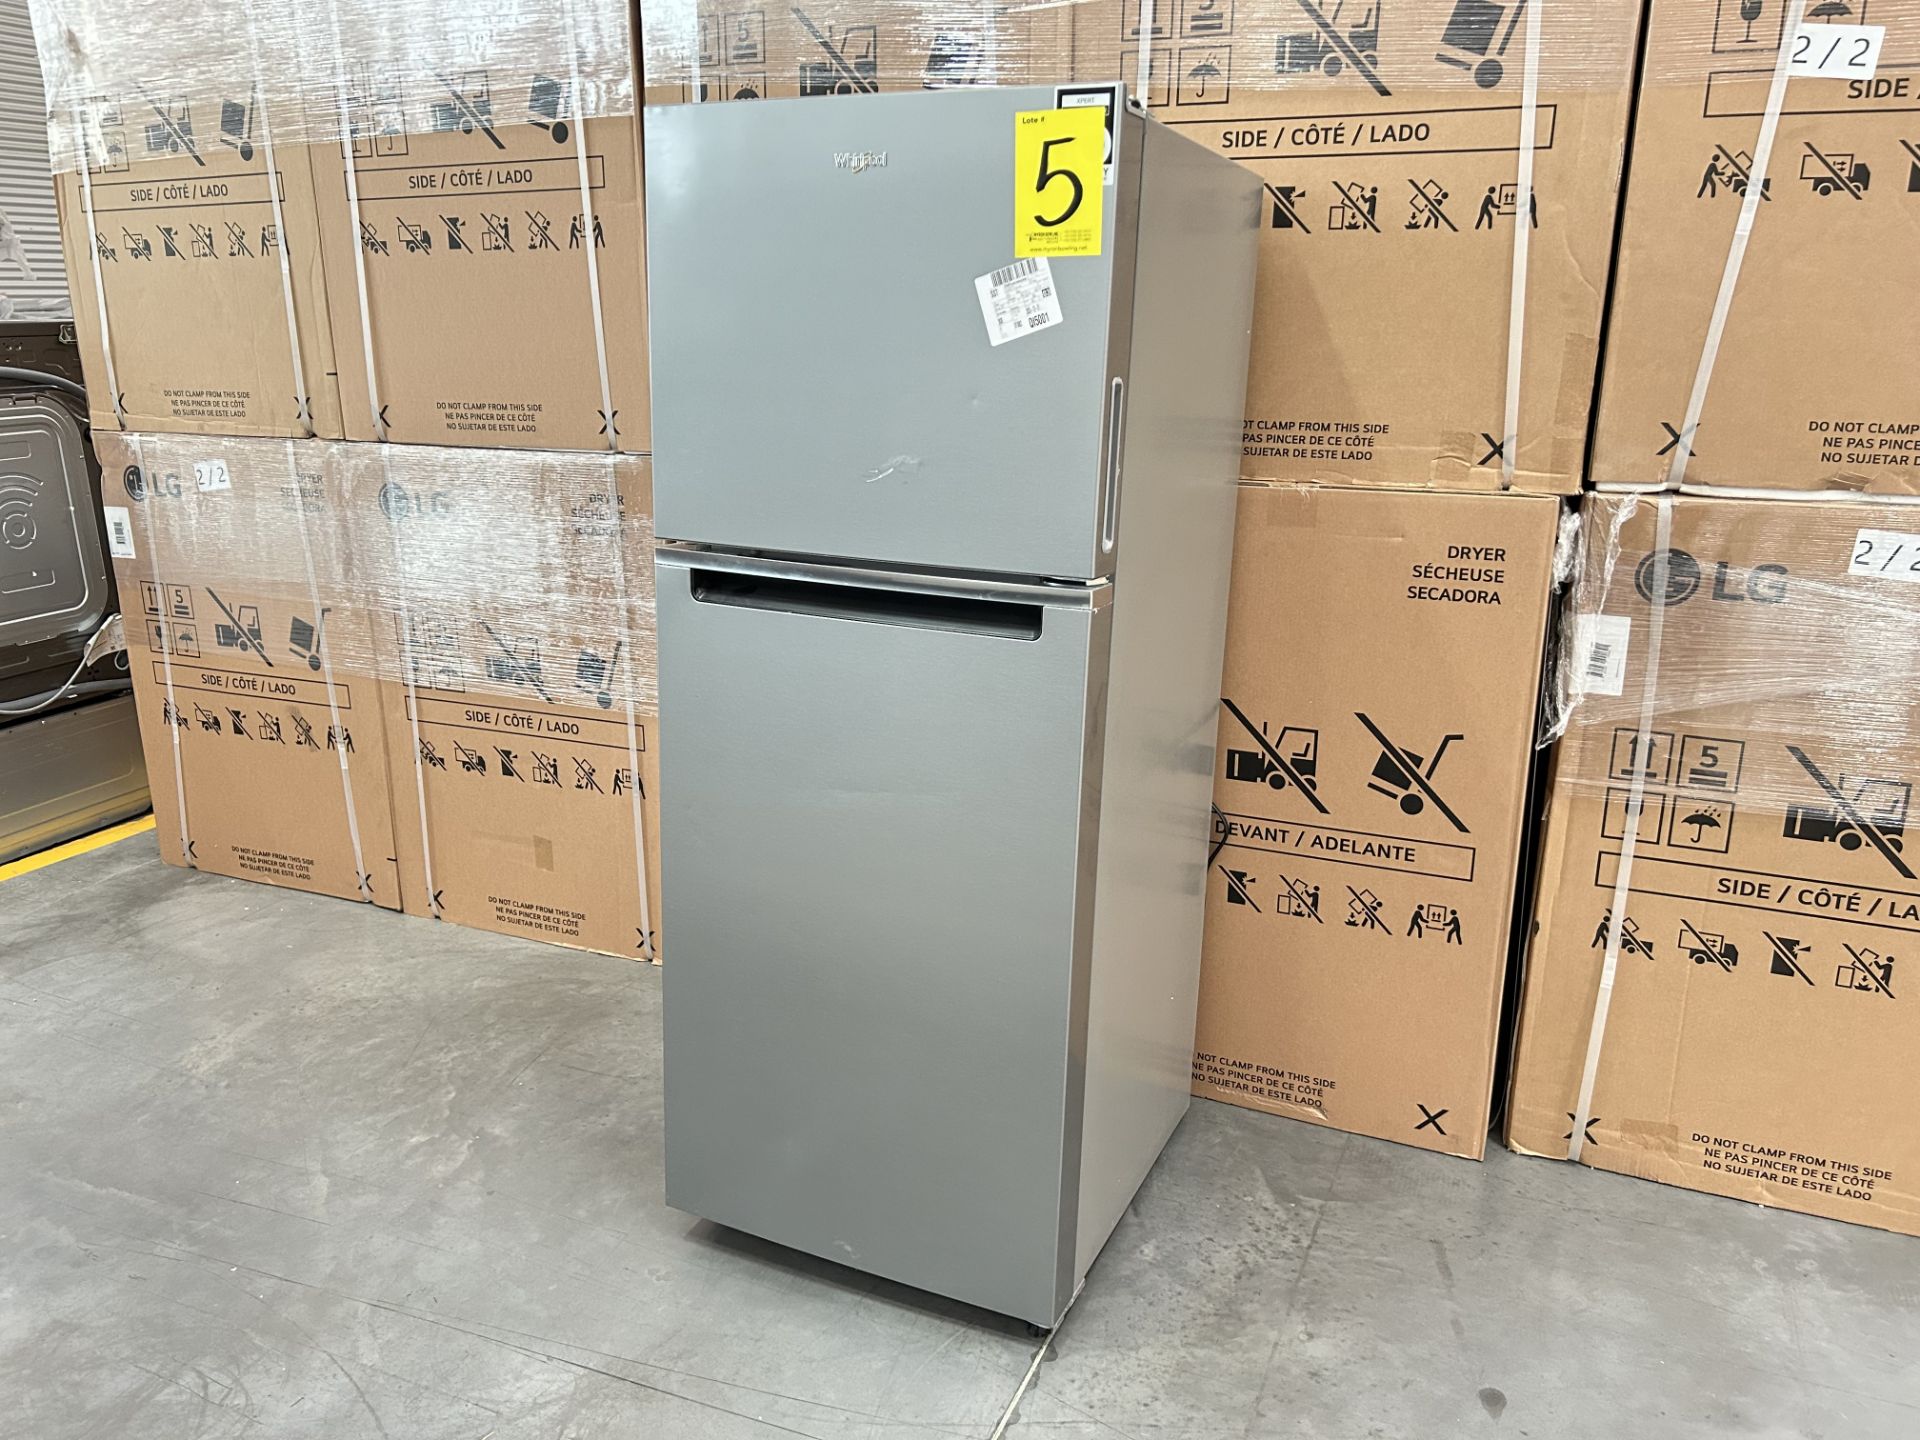 Refrigerador Marca WHIRLPOOL, Modelo WT1230K, Serie 279431, Color GRIS (Equipo de devolución) - Image 3 of 7